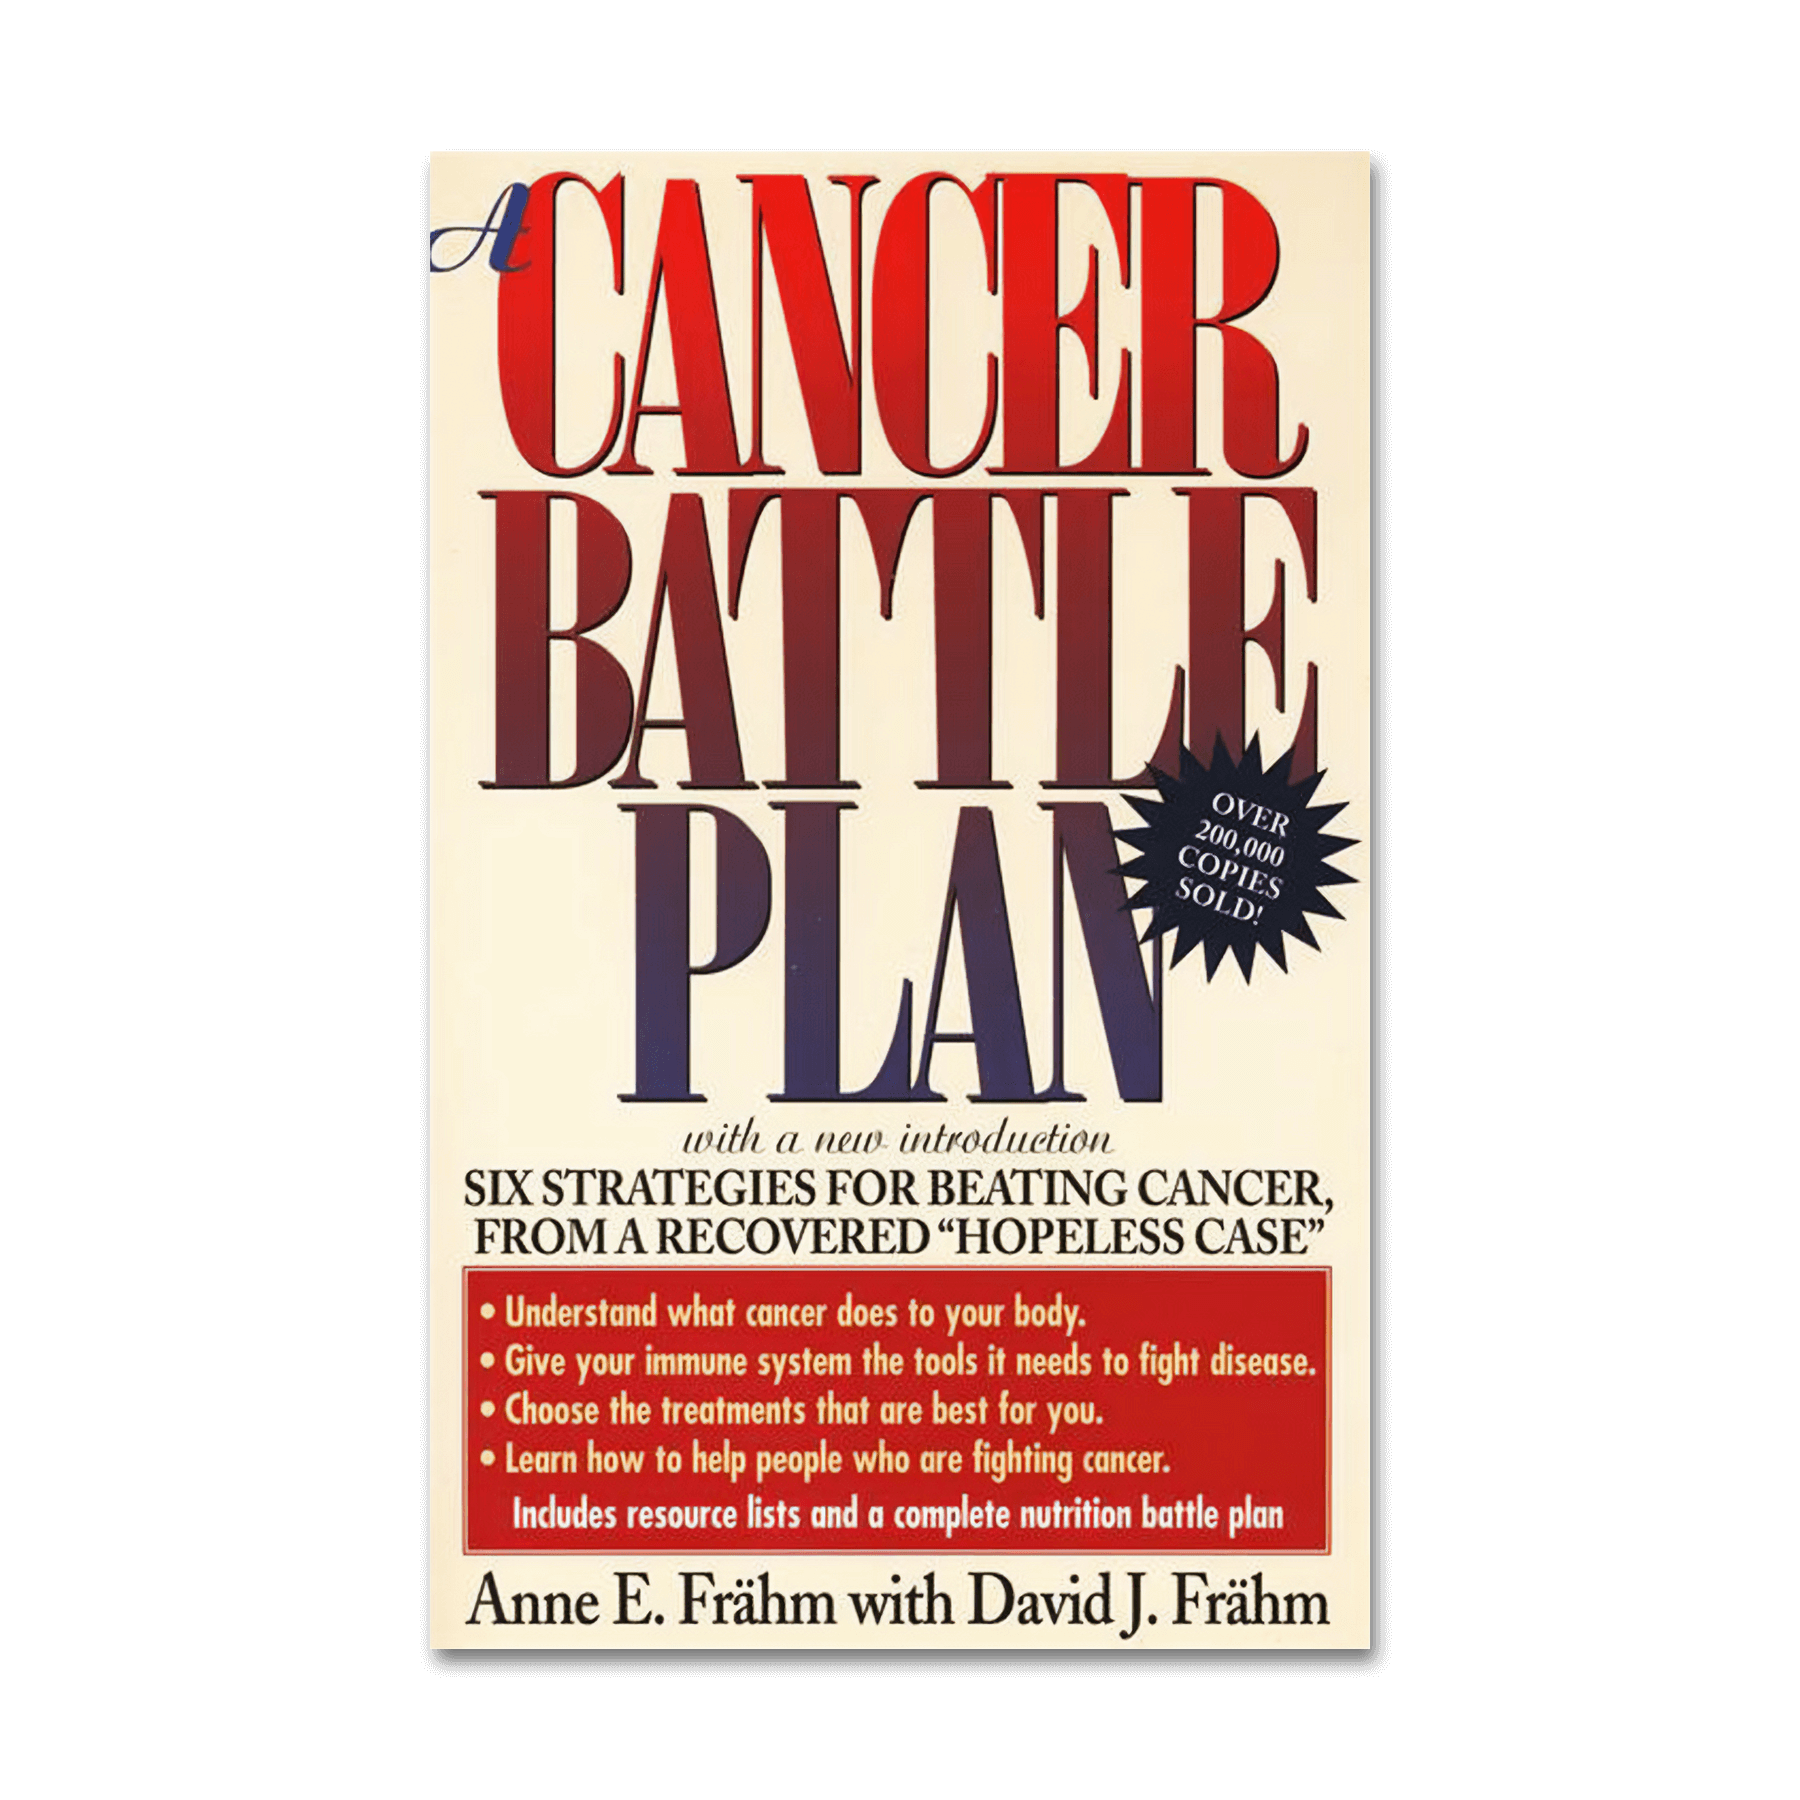 Cancer Battle Plan, A